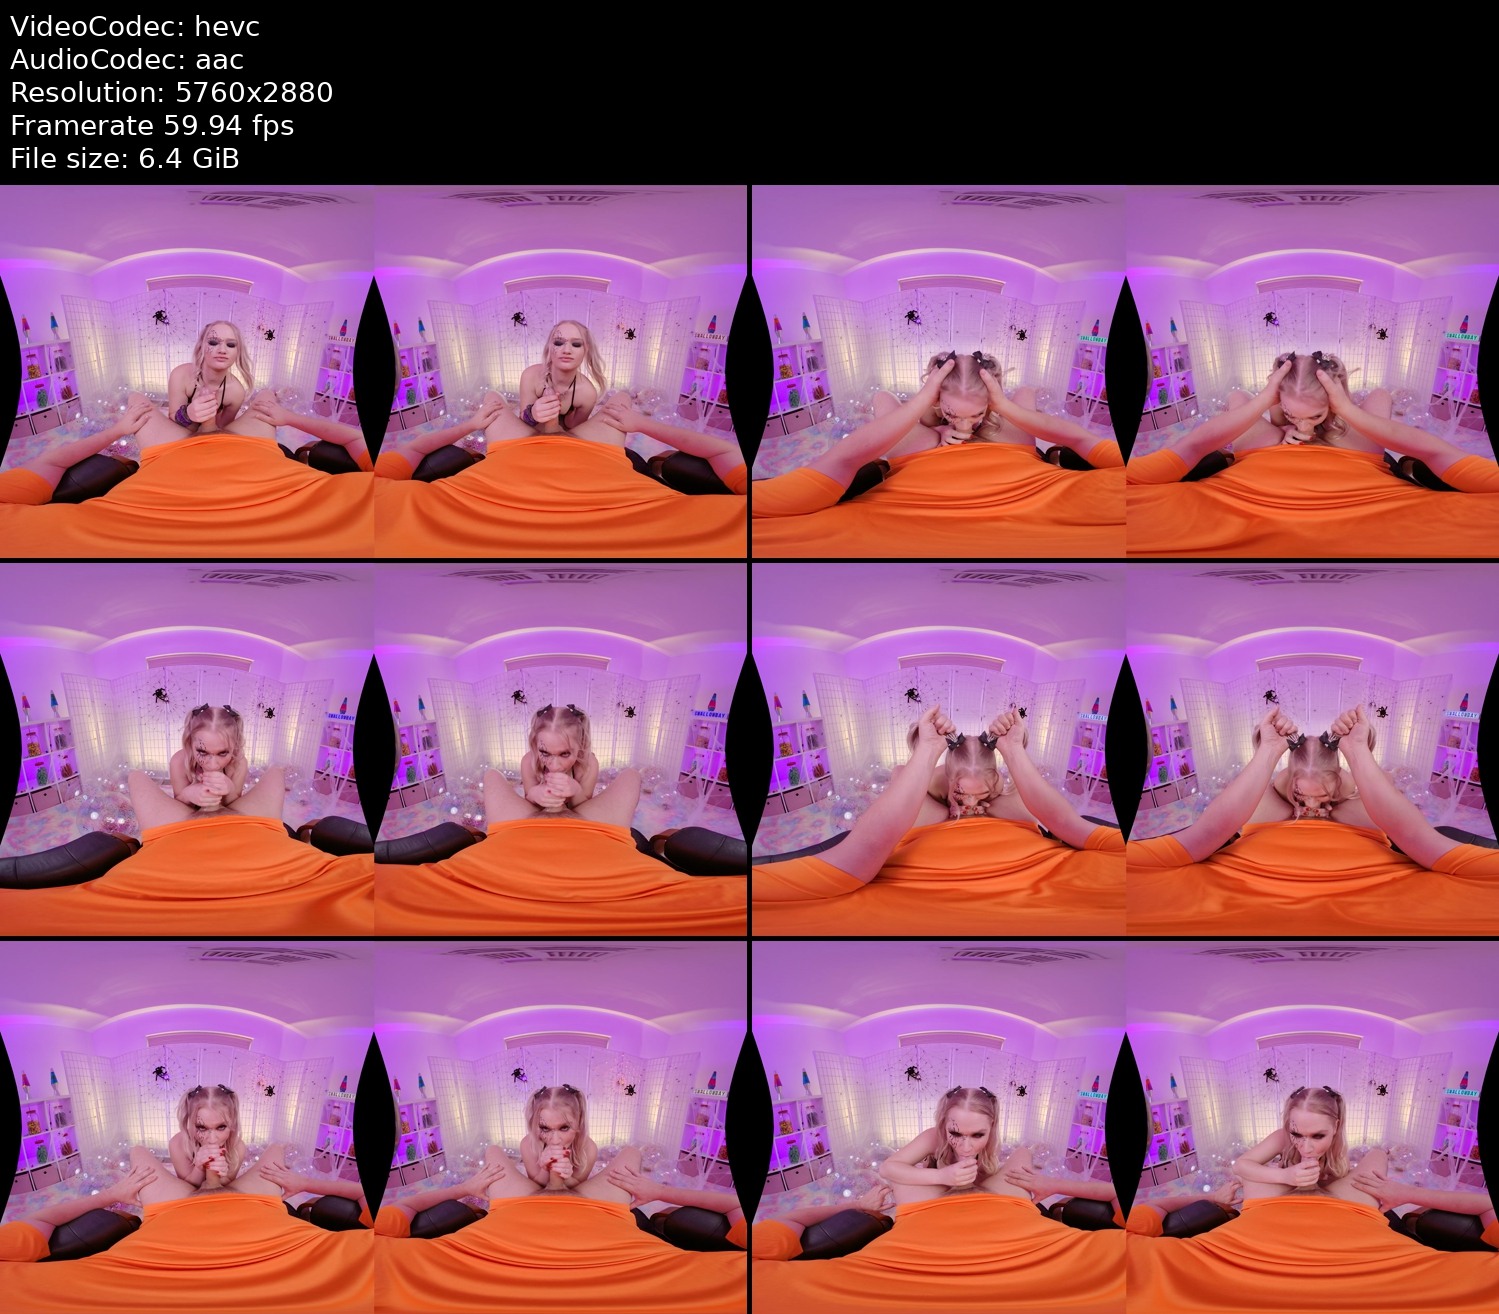 [VR]swallowbay halloween pumpkin pie 180x180 3dh oculus rift h265